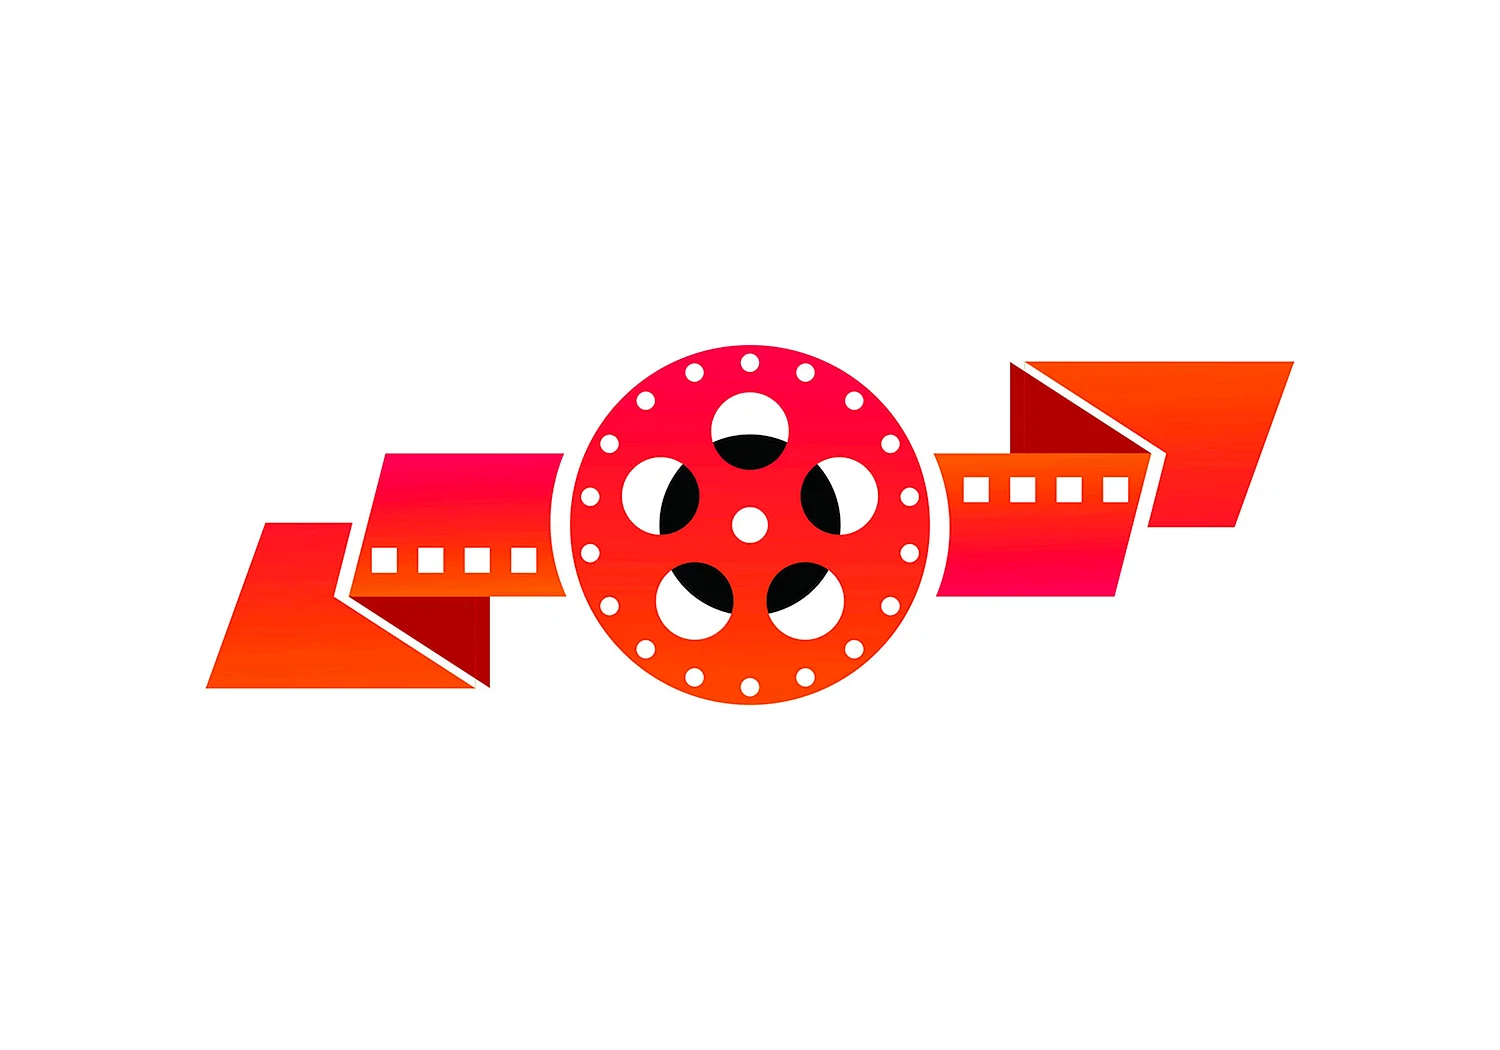 Логотип кинотеатра